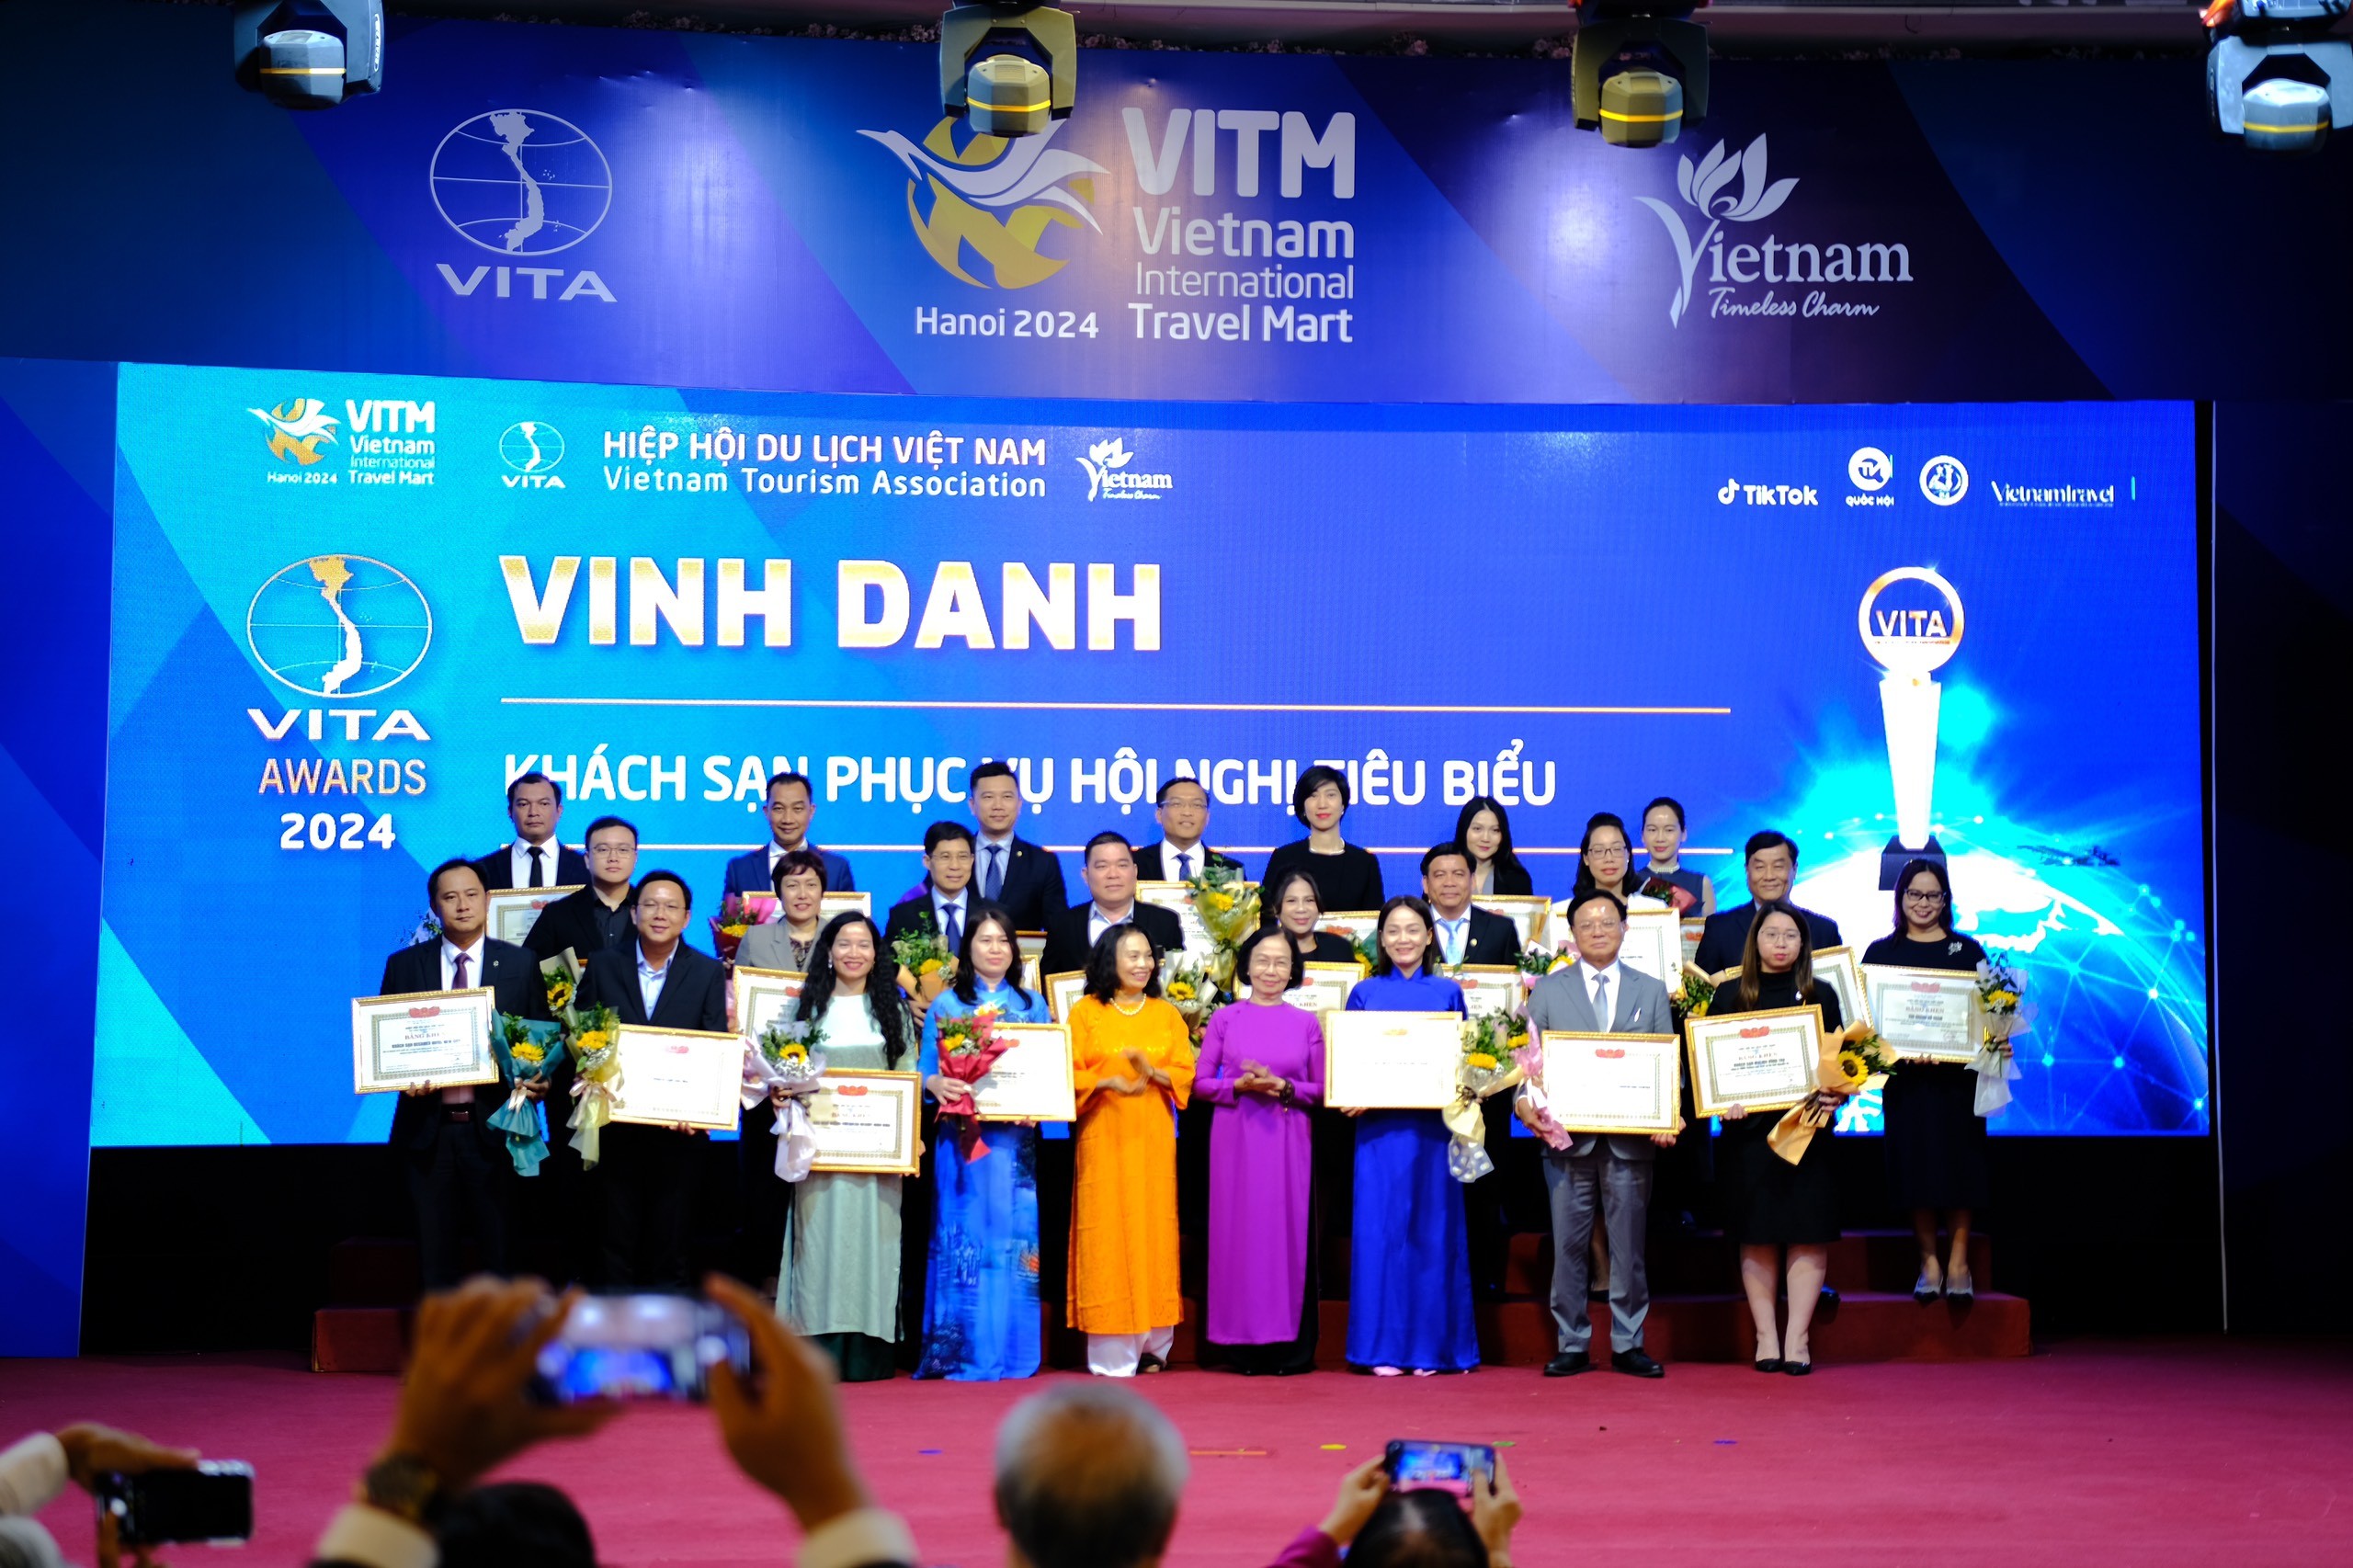 Lễ vinh danh các doanh nghiệp và cá nhân tiêu biểu của du lịch Việt Nam năm 2024